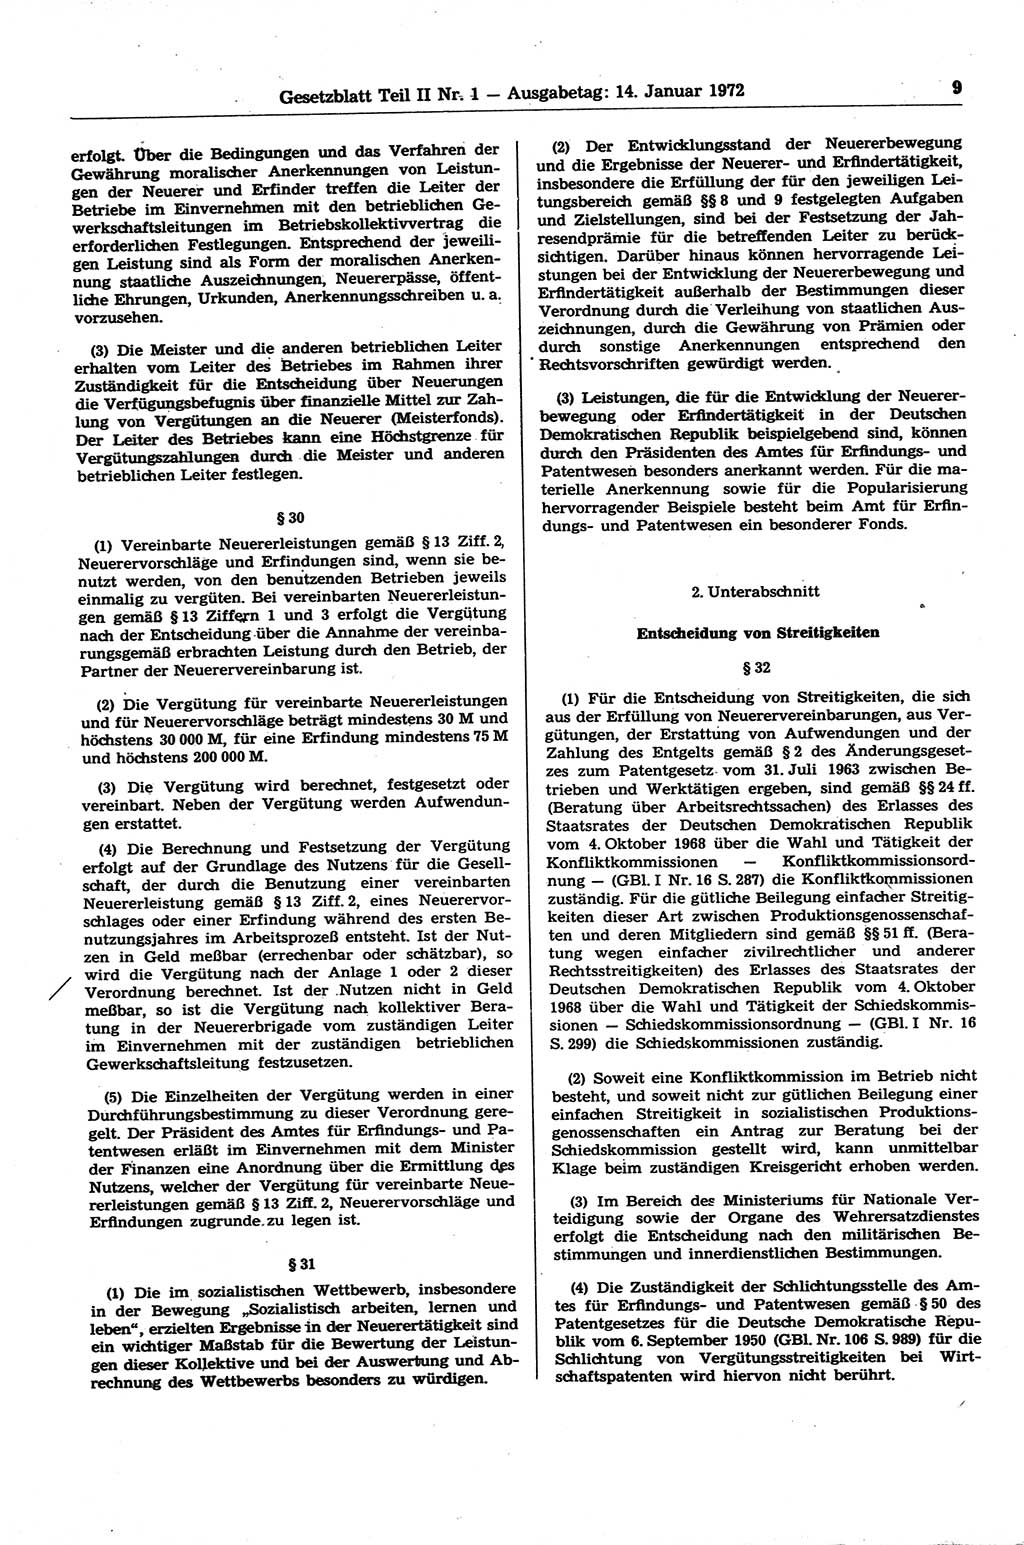 Gesetzblatt (GBl.) der Deutschen Demokratischen Republik (DDR) Teil ⅠⅠ 1972, Seite 9 (GBl. DDR ⅠⅠ 1972, S. 9)